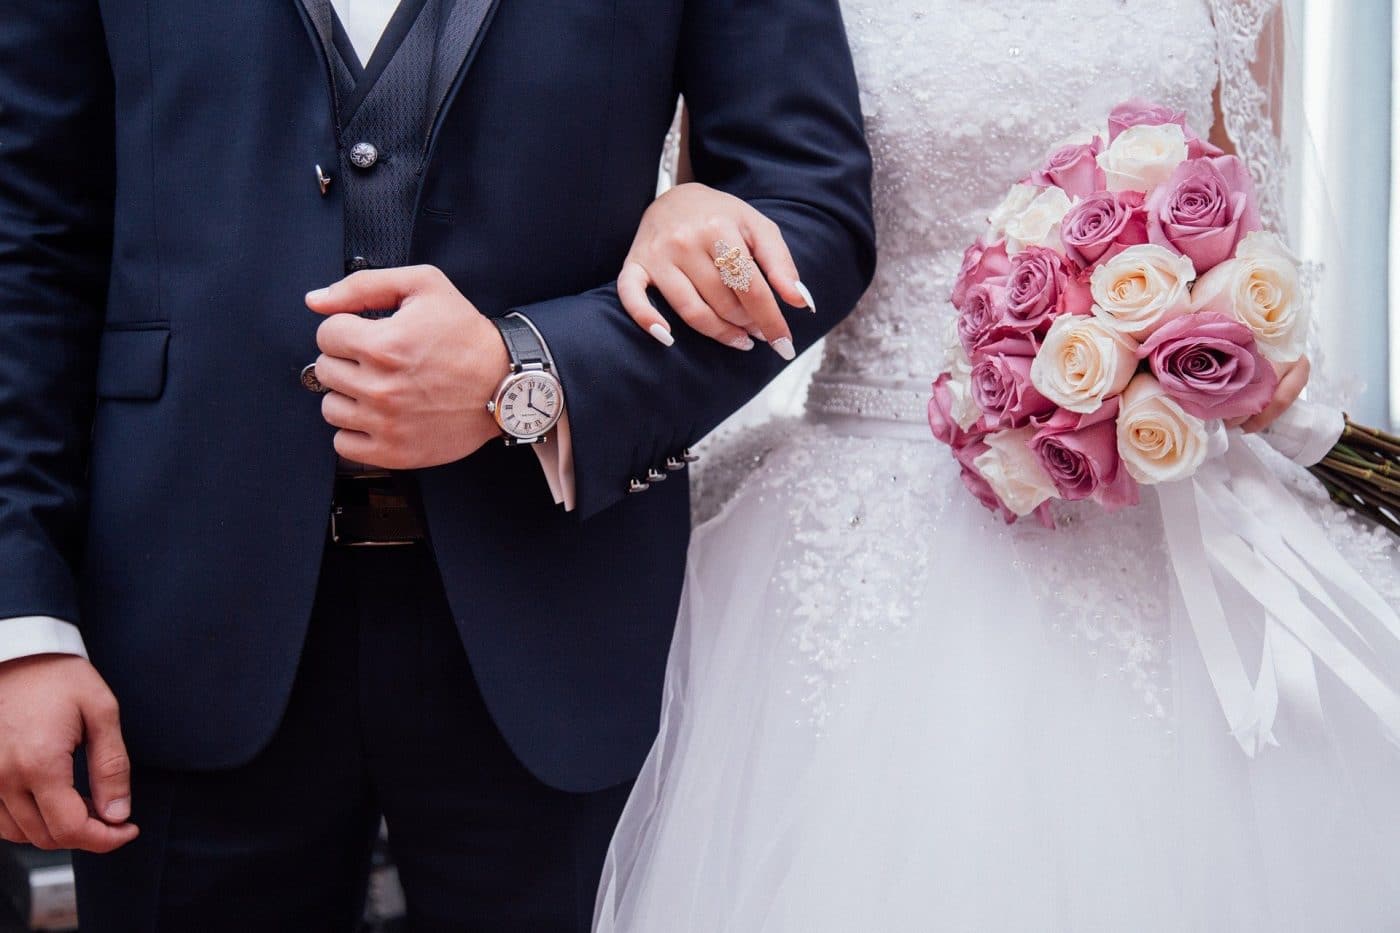 Texte de félicitations pour un mariage : Les plus beaux messages pour les mariés